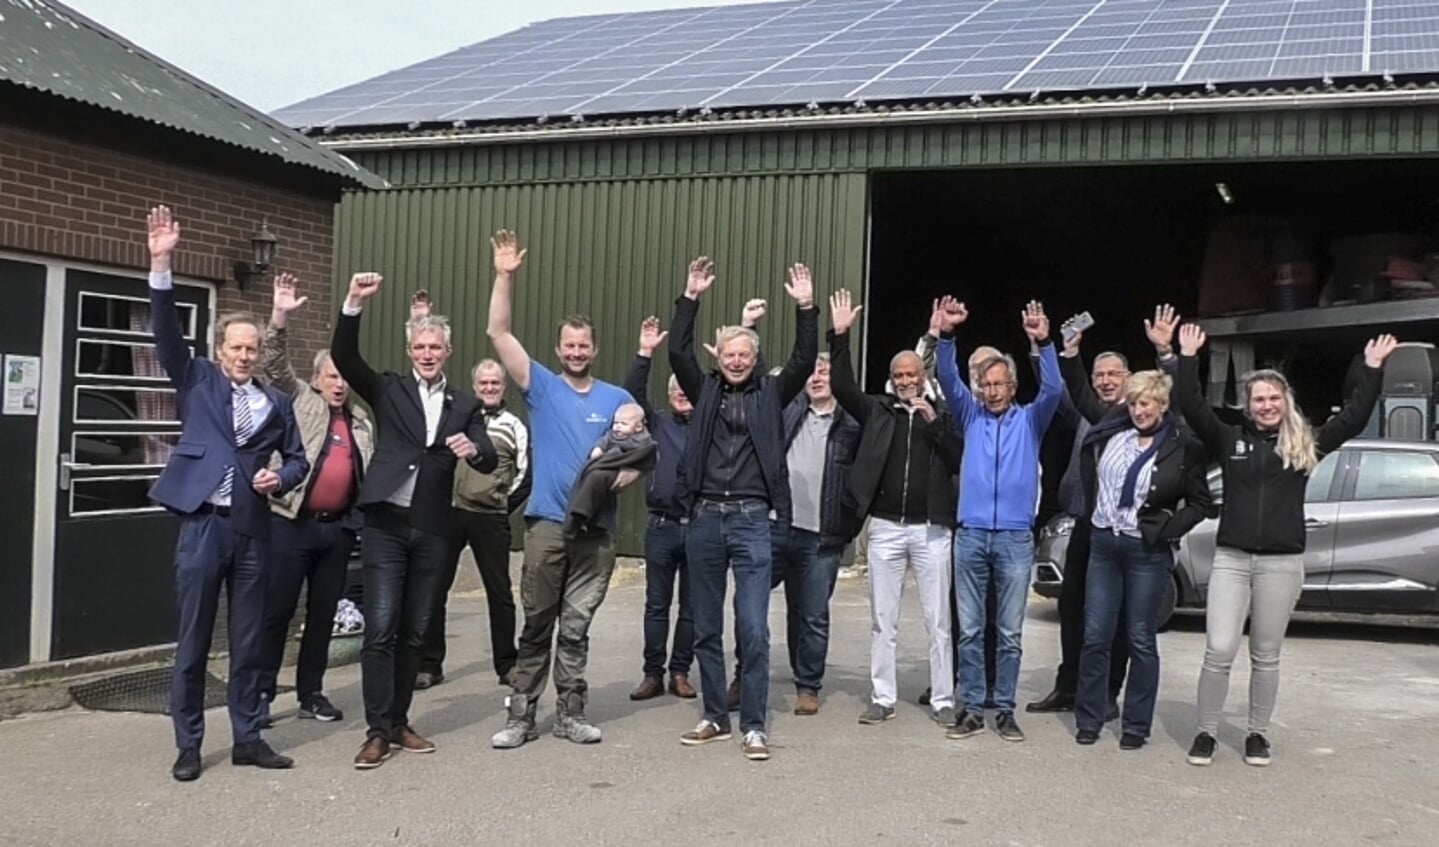 De deelnemers aan het zonnepanelenproject met zonnepanelen op de schuur van boerderij Akkerlust (foto: Henk Knoester).